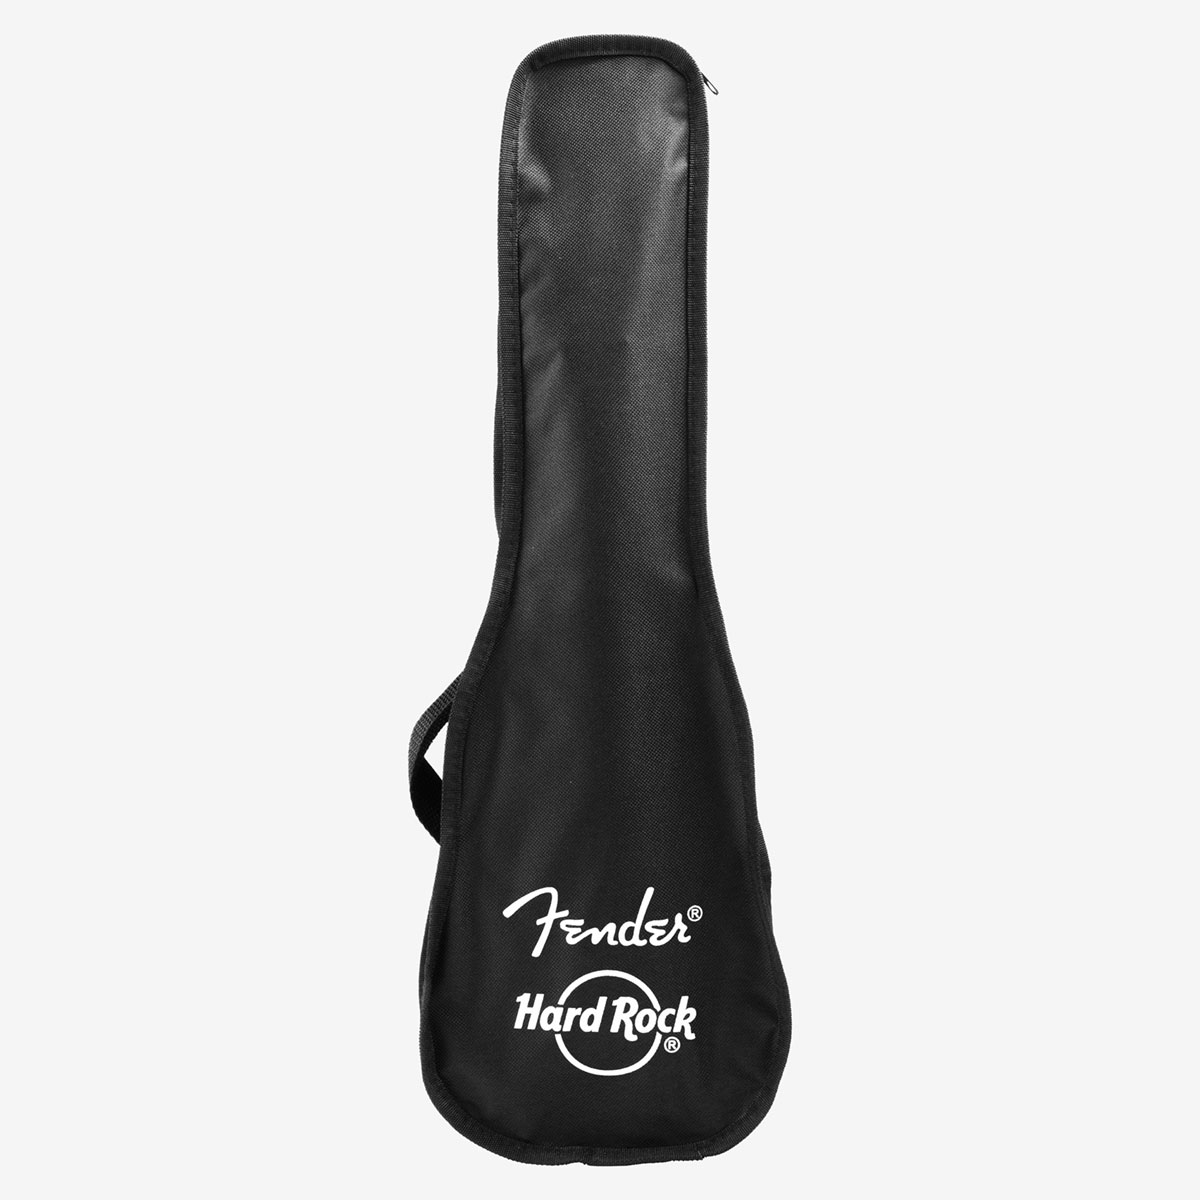 Fender x Hard Rock Venice Ukelee in Satin Black with Bag image number 6